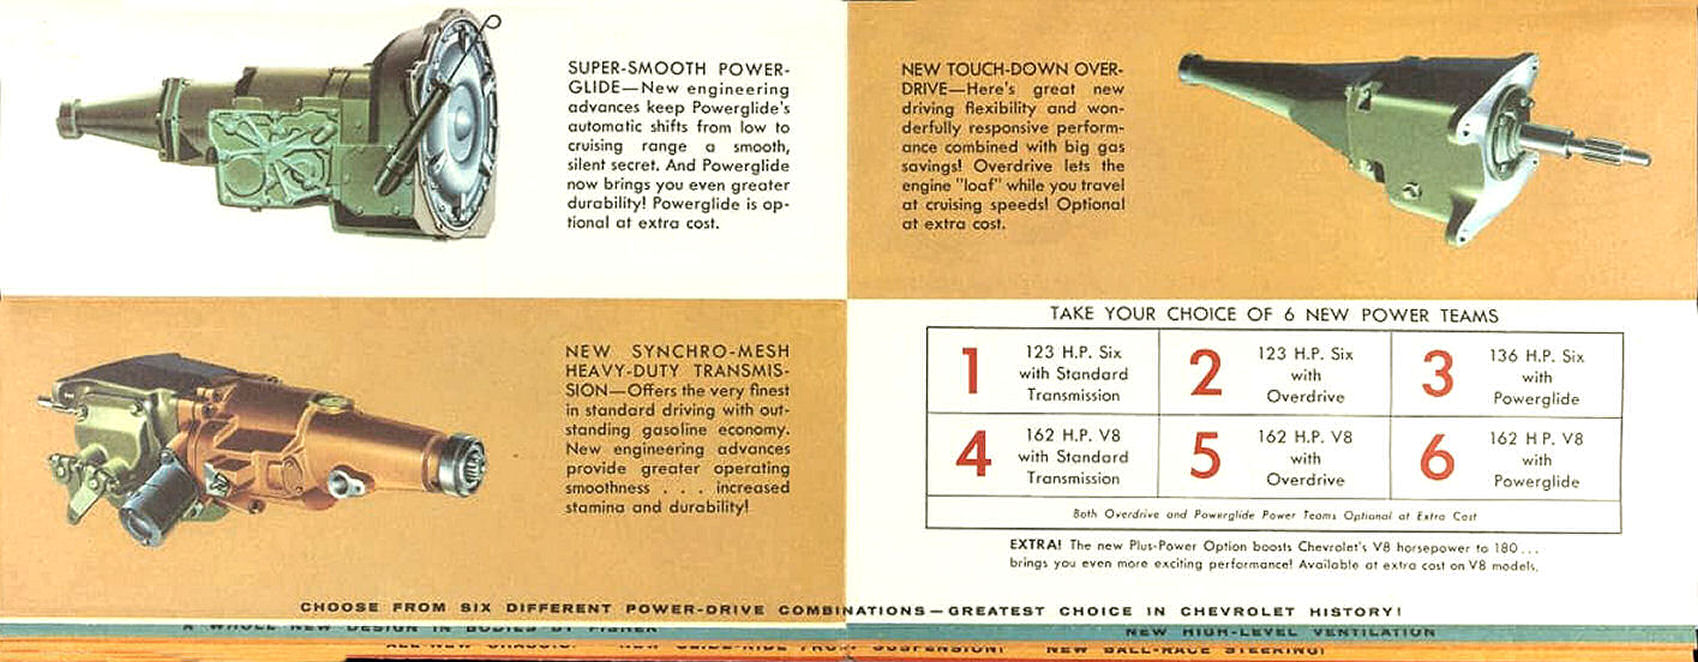 1955_Chevrolet_Whats_New_Folder-07